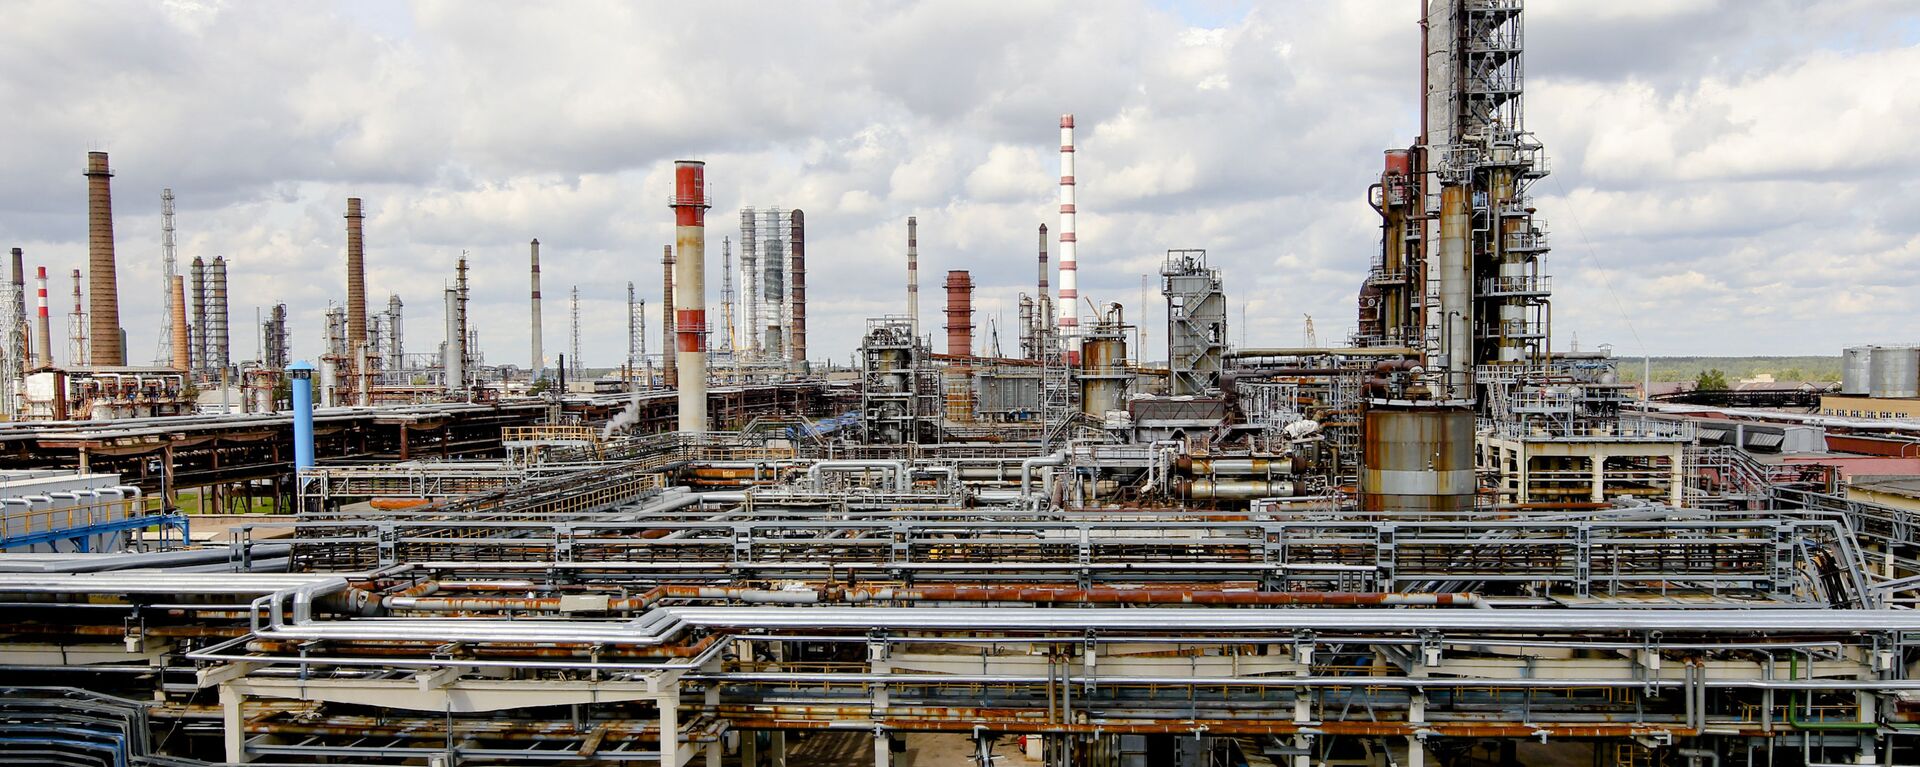 Нефтеперерабатывающий завод Нафтан в Новополоцке - Sputnik Беларусь, 1920, 05.02.2021